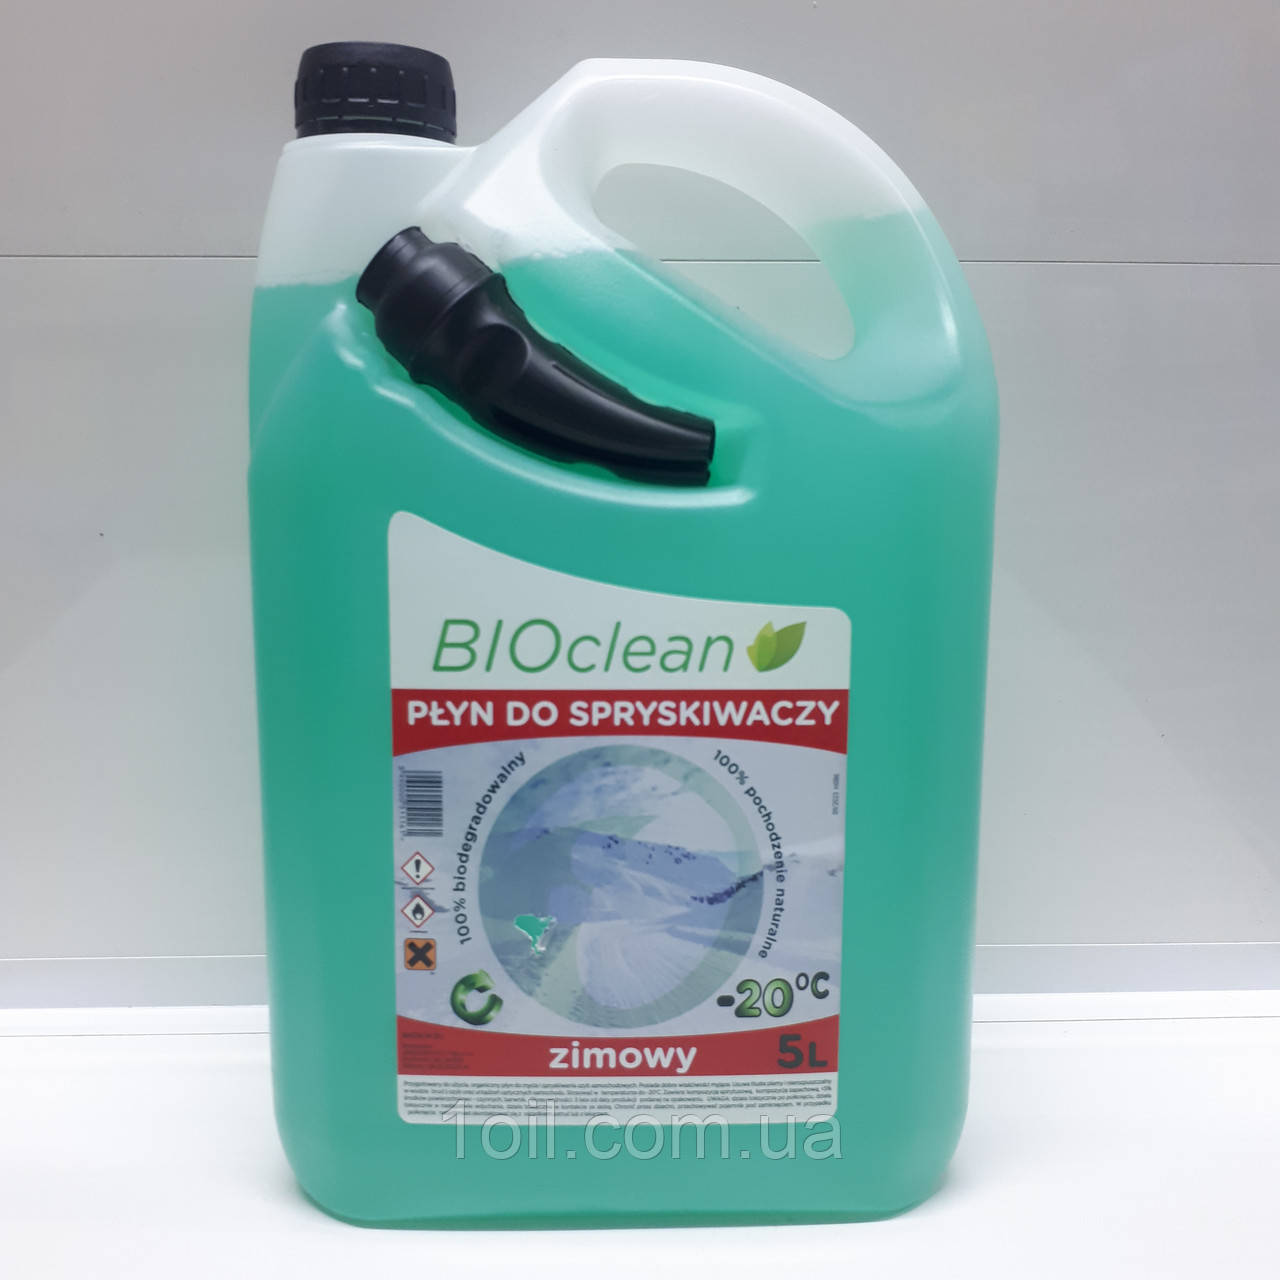 Очищувач скла BIOclean (Польща) -20°C 5кг